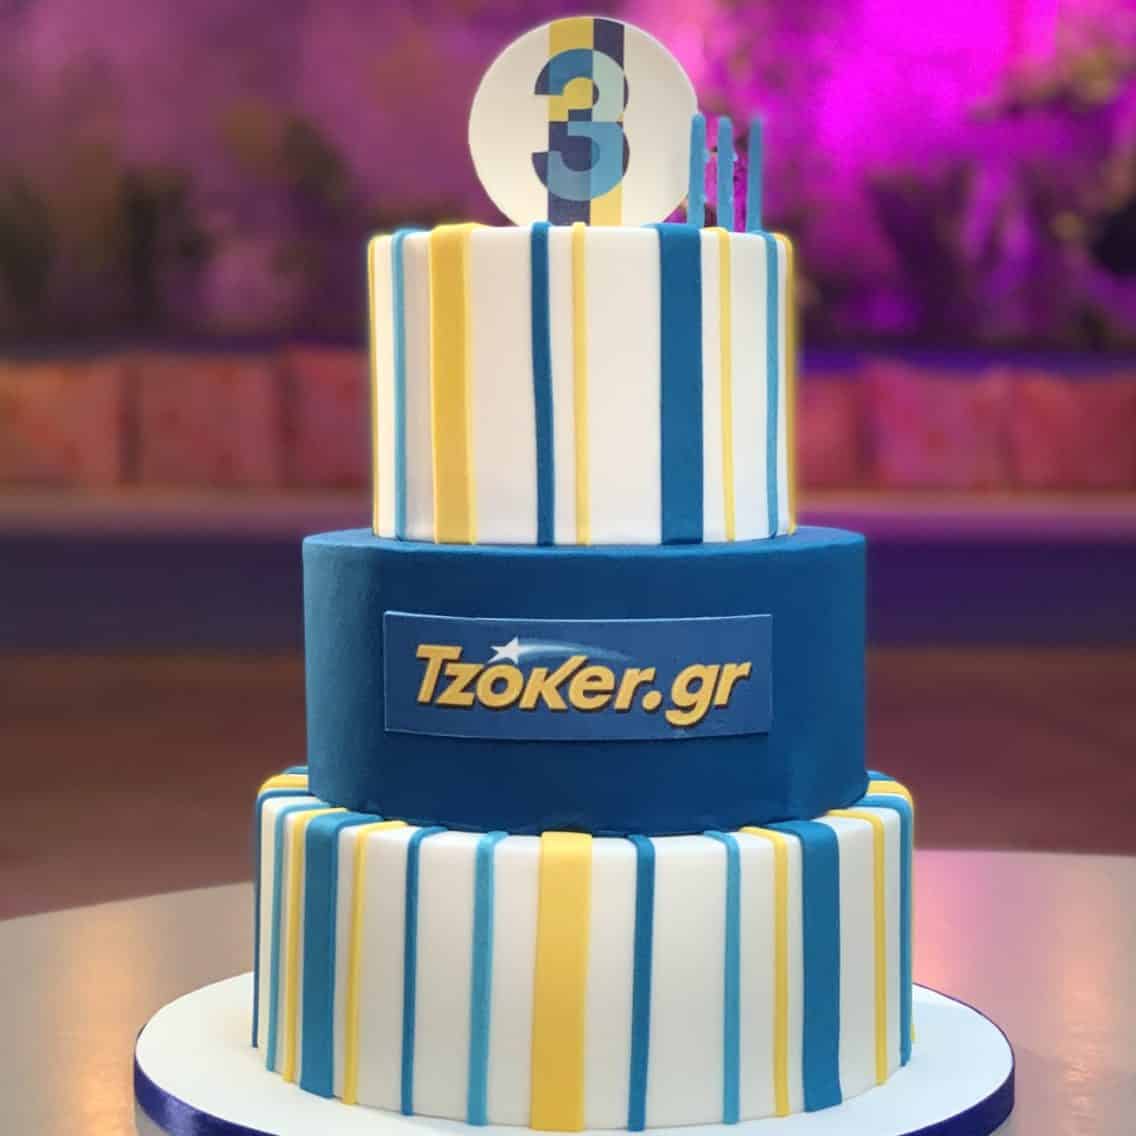 Happy birthday Tzoker.gr